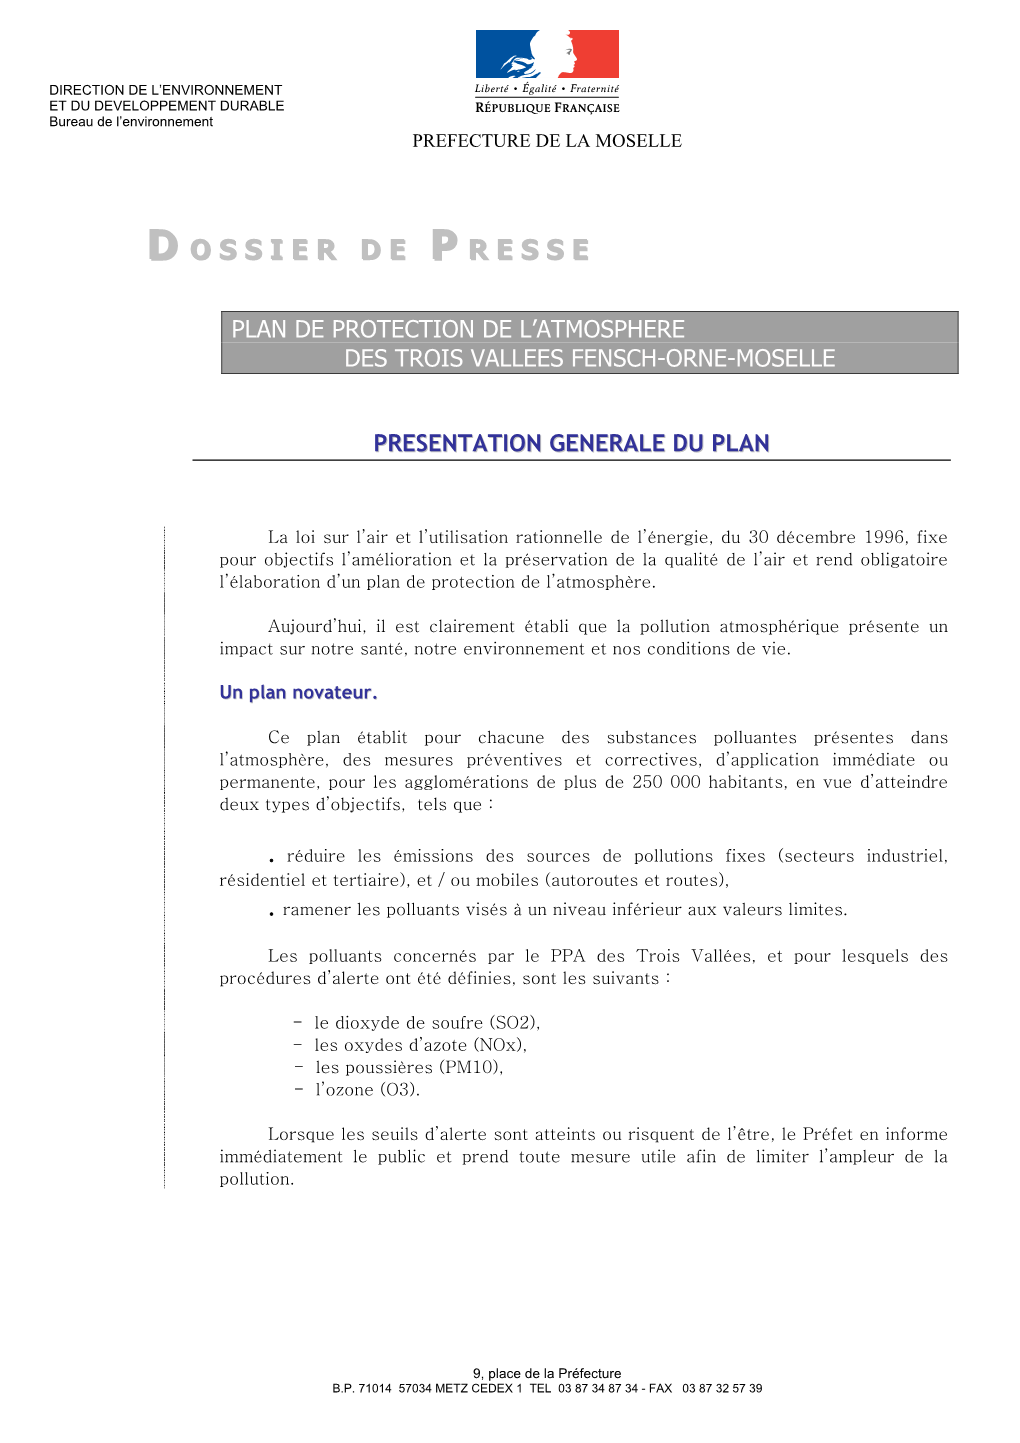 Plan De Protection De L’Atmosphere Des Trois Vallees Fensch-Orne-Moselle